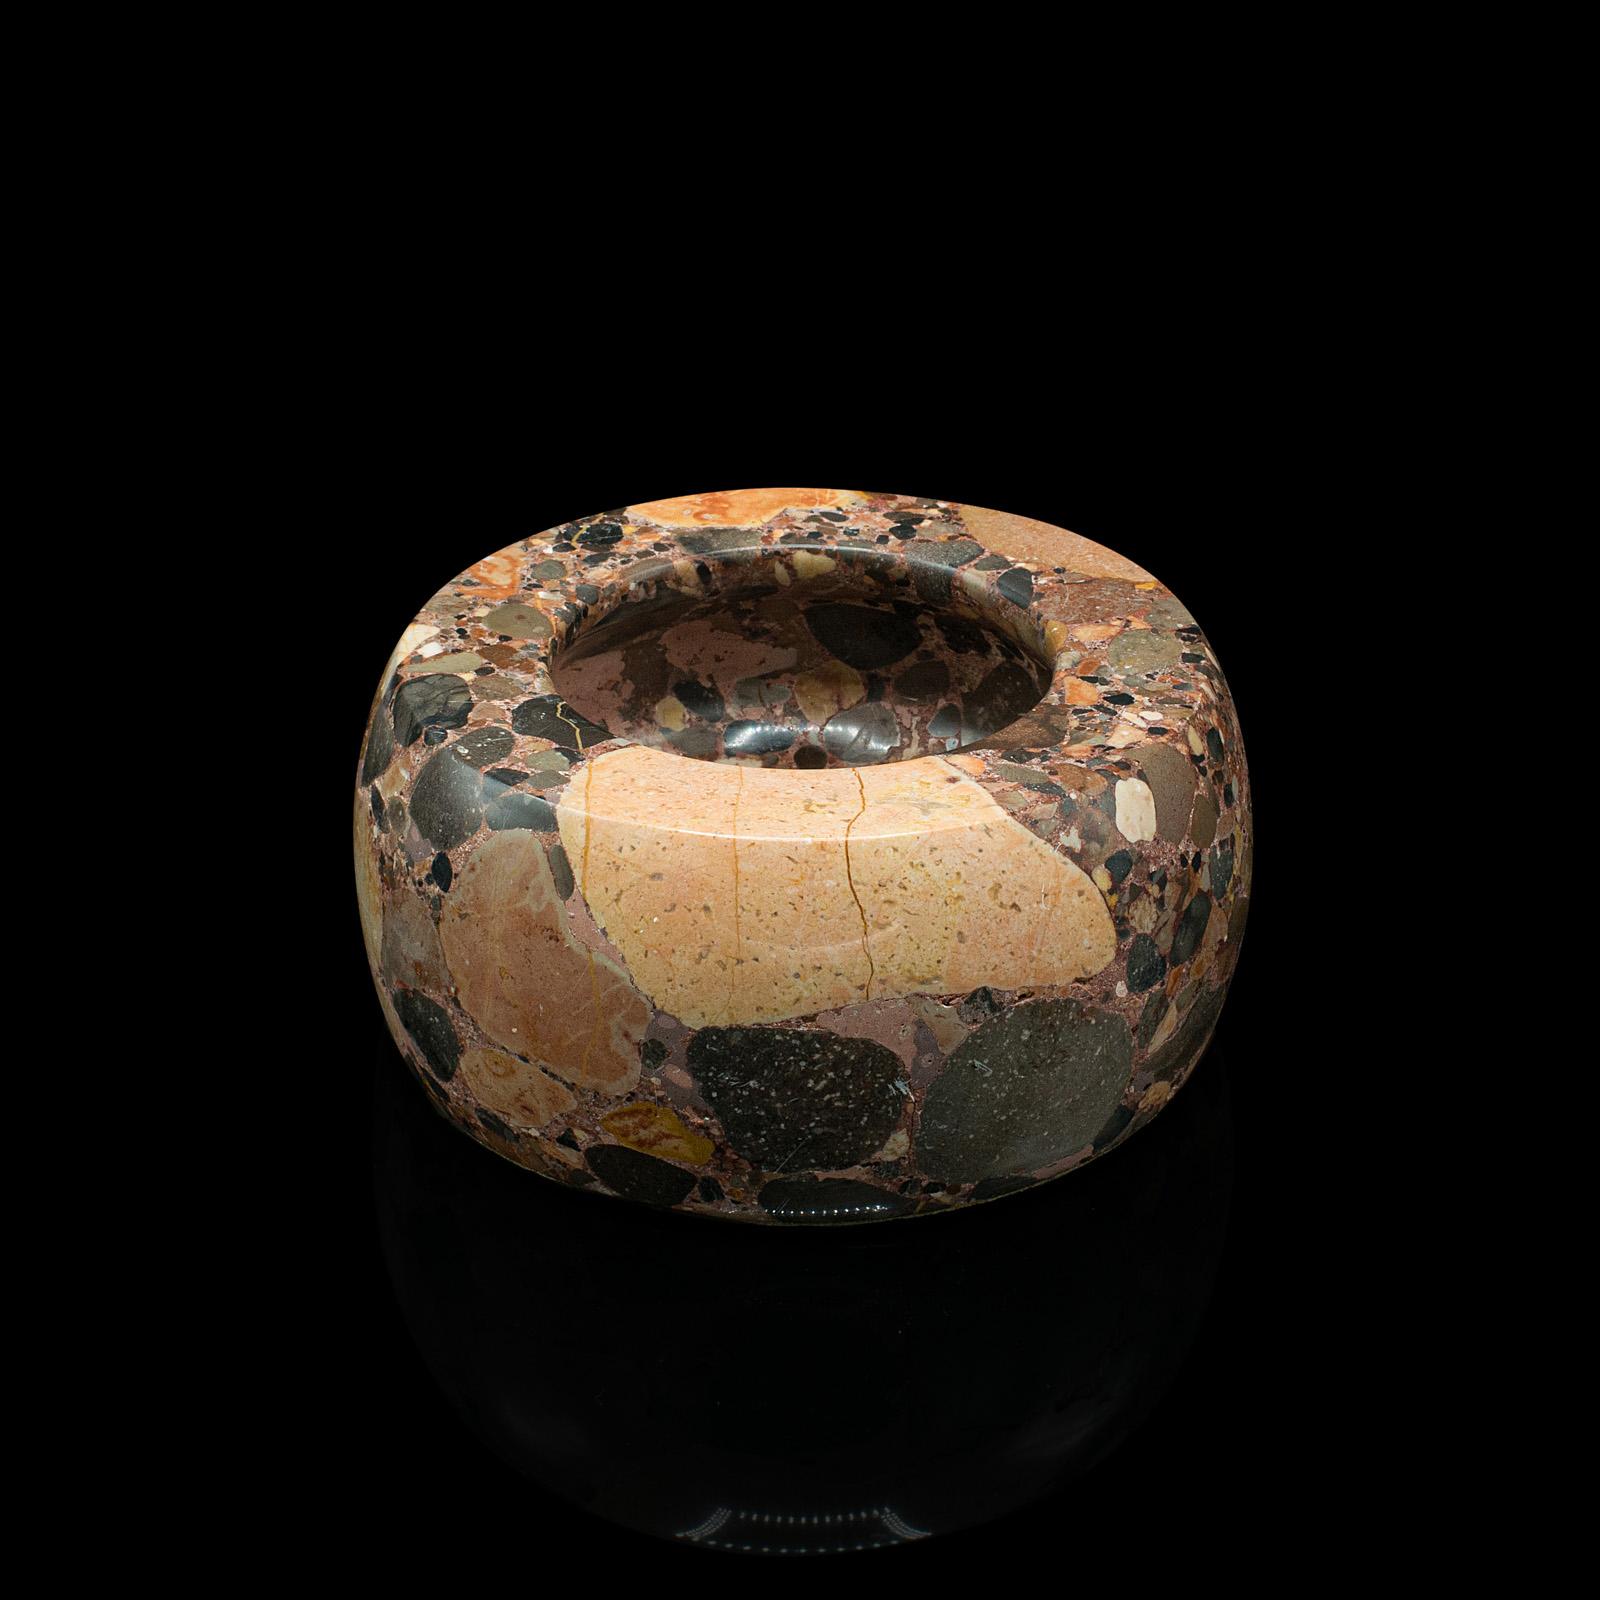 Dies ist eine antike dekorative Potpourri-Schale. Eine englische Schale aus poliertem Granit, aus dem frühen 20. Jahrhundert, um 1920.

Hervorragende Haptik und eine ansprechende polierte Oberfläche
Zeigt eine wünschenswerte gealterte Patina und